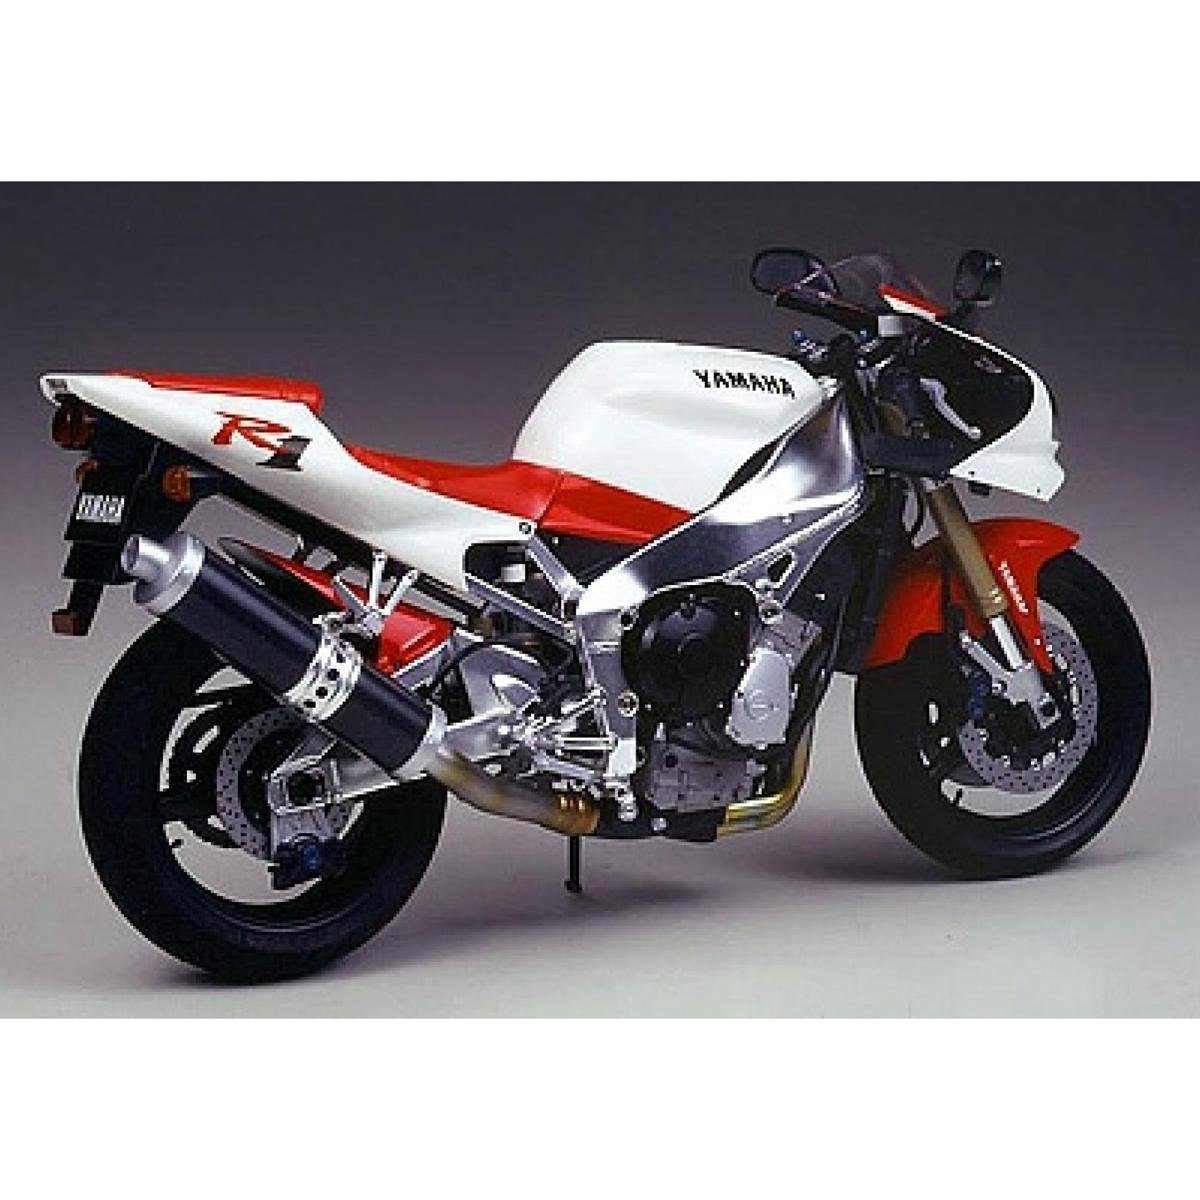 Tamiya Modellbausatz 300014073 - Modellbausatz,1:12 Yamaha YZF-R1 1000ccm  1997